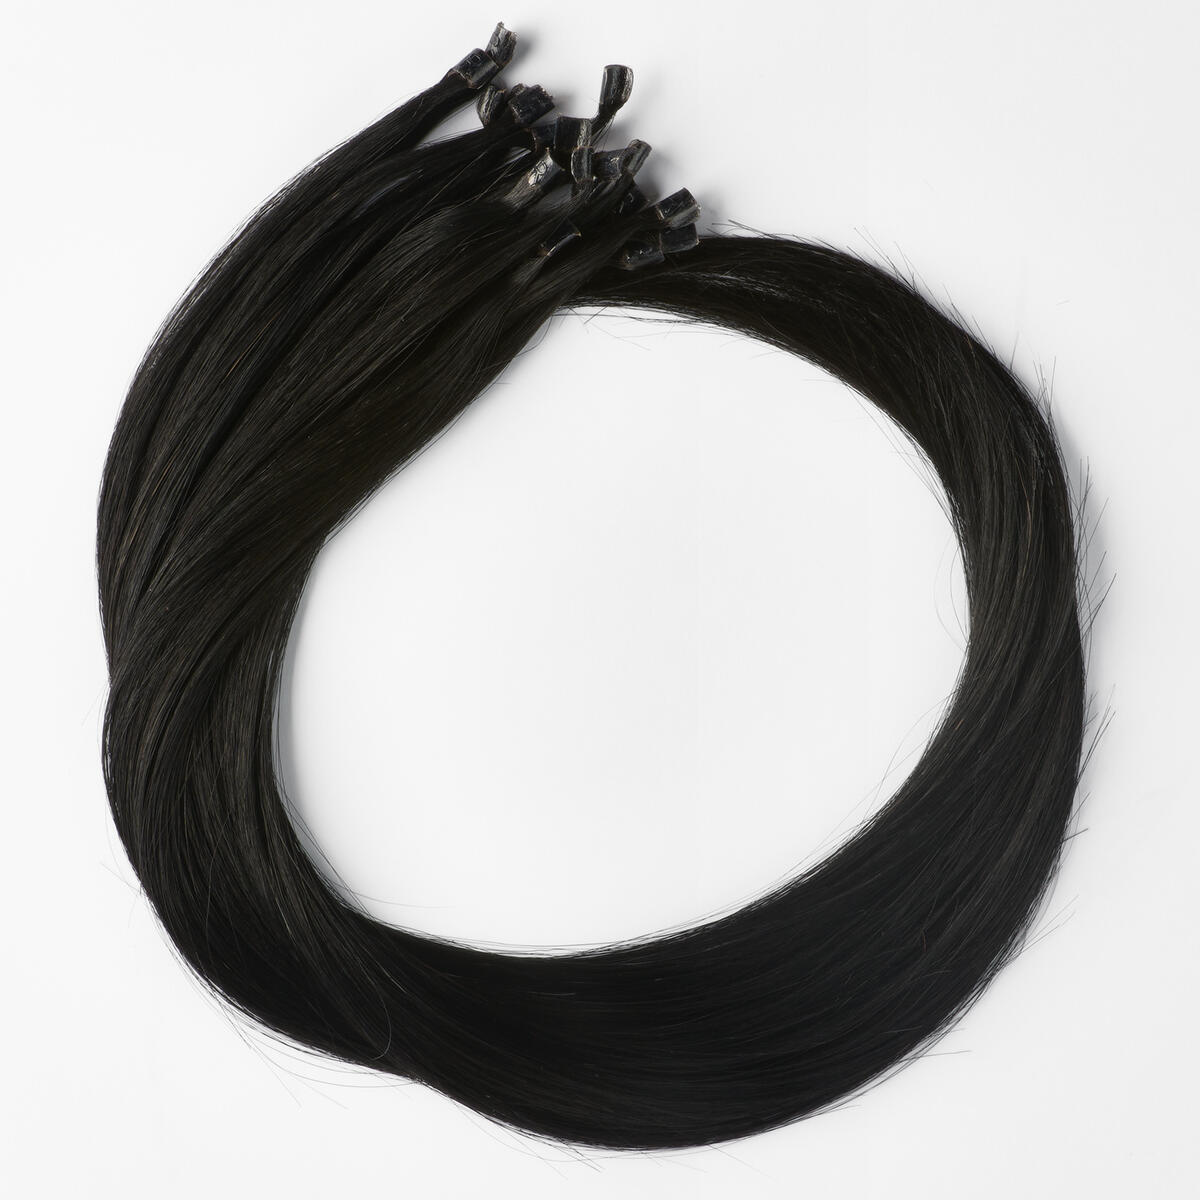 Nail Hair Premium 1.0 Black 70 cm